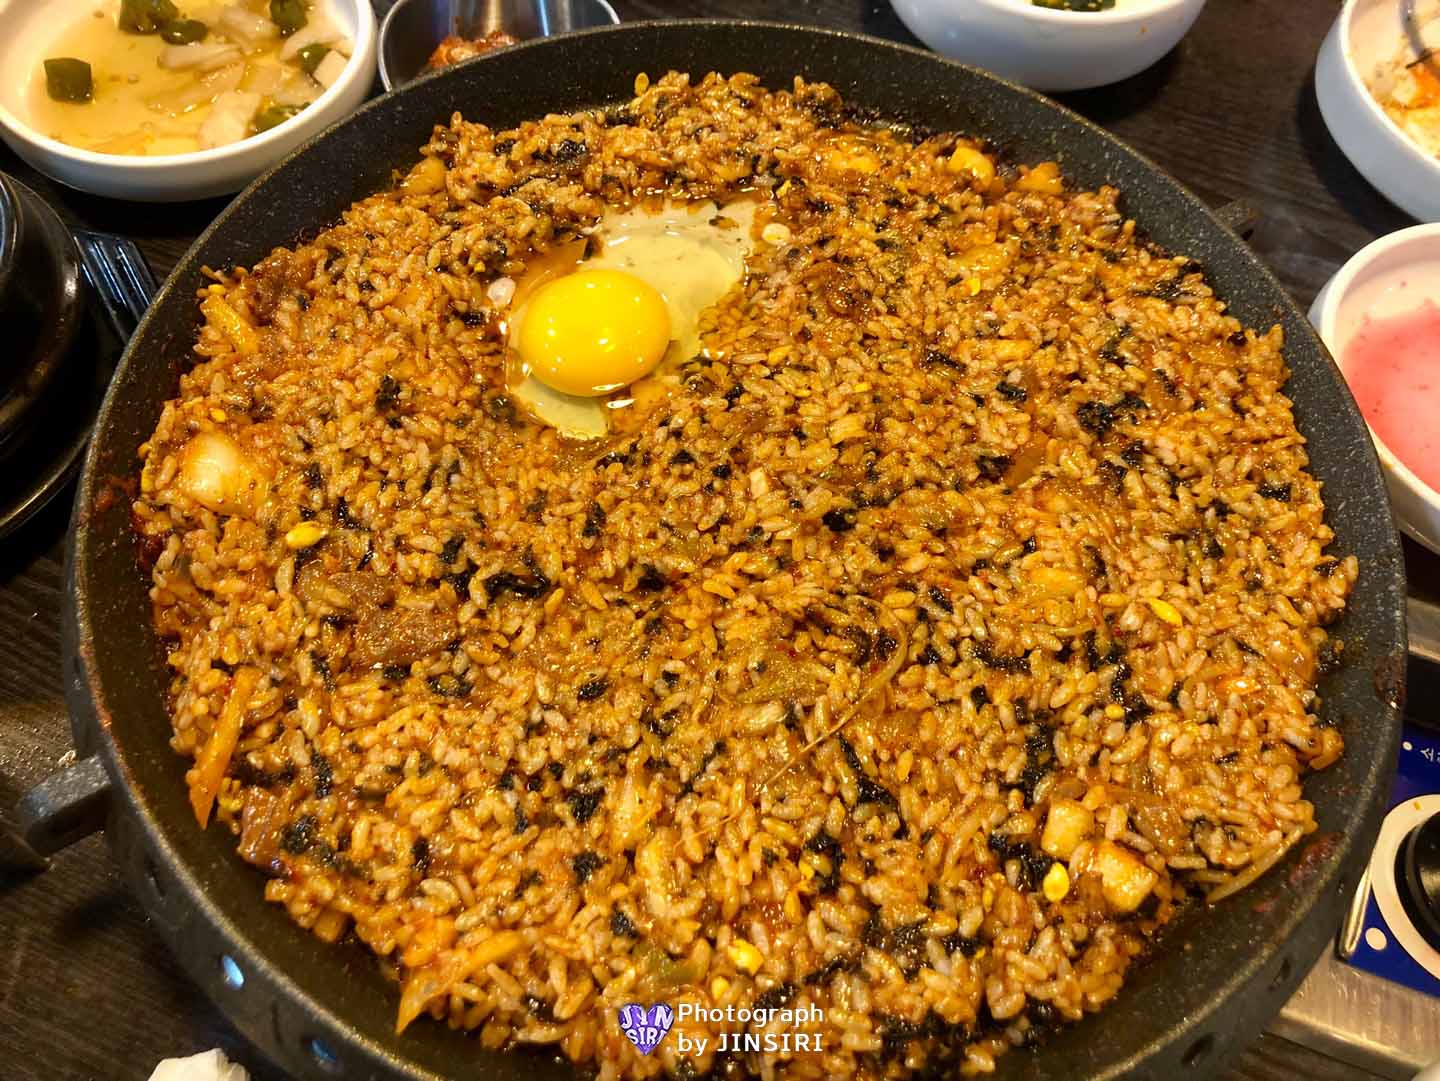 김포 풍무동 오새쭈 쭈삼 맛집 추천 밥집 데이트 매콤한음식 철판요리